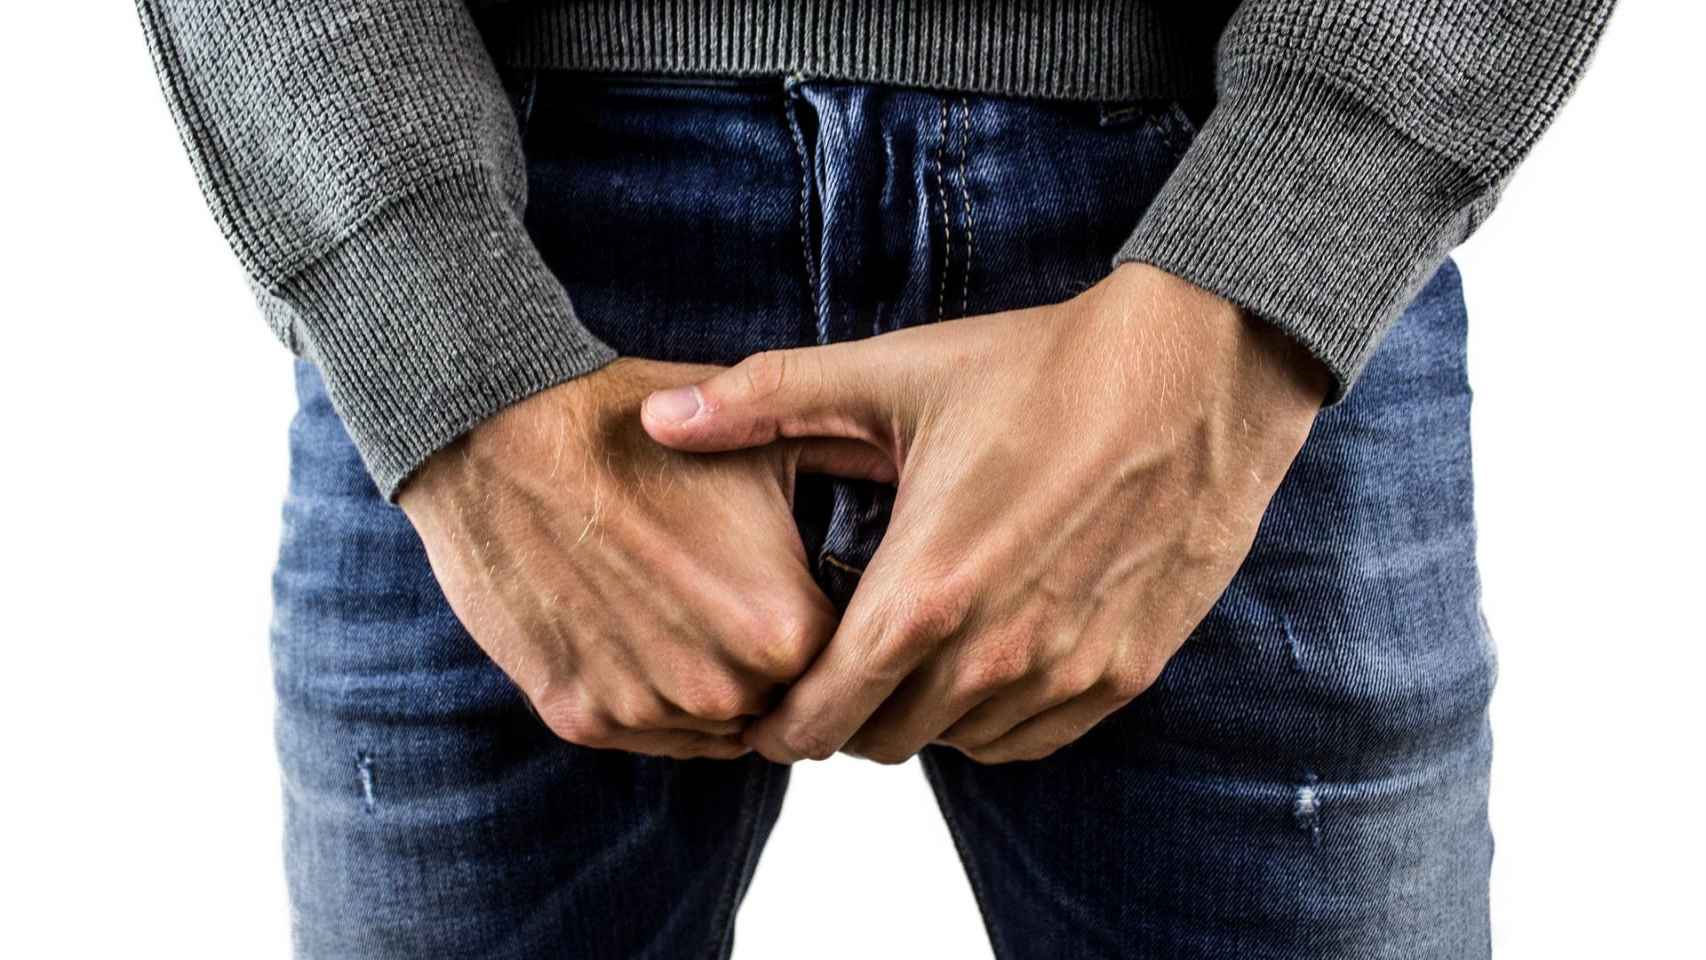 La disfunción eréctil afecta a gran cantidad de hombres. Muchos varones van a los ambulatorios cuando tienen problemas en el sexo tras una erección deficiente y recurren a medicamentos o implantes / PIXABAY